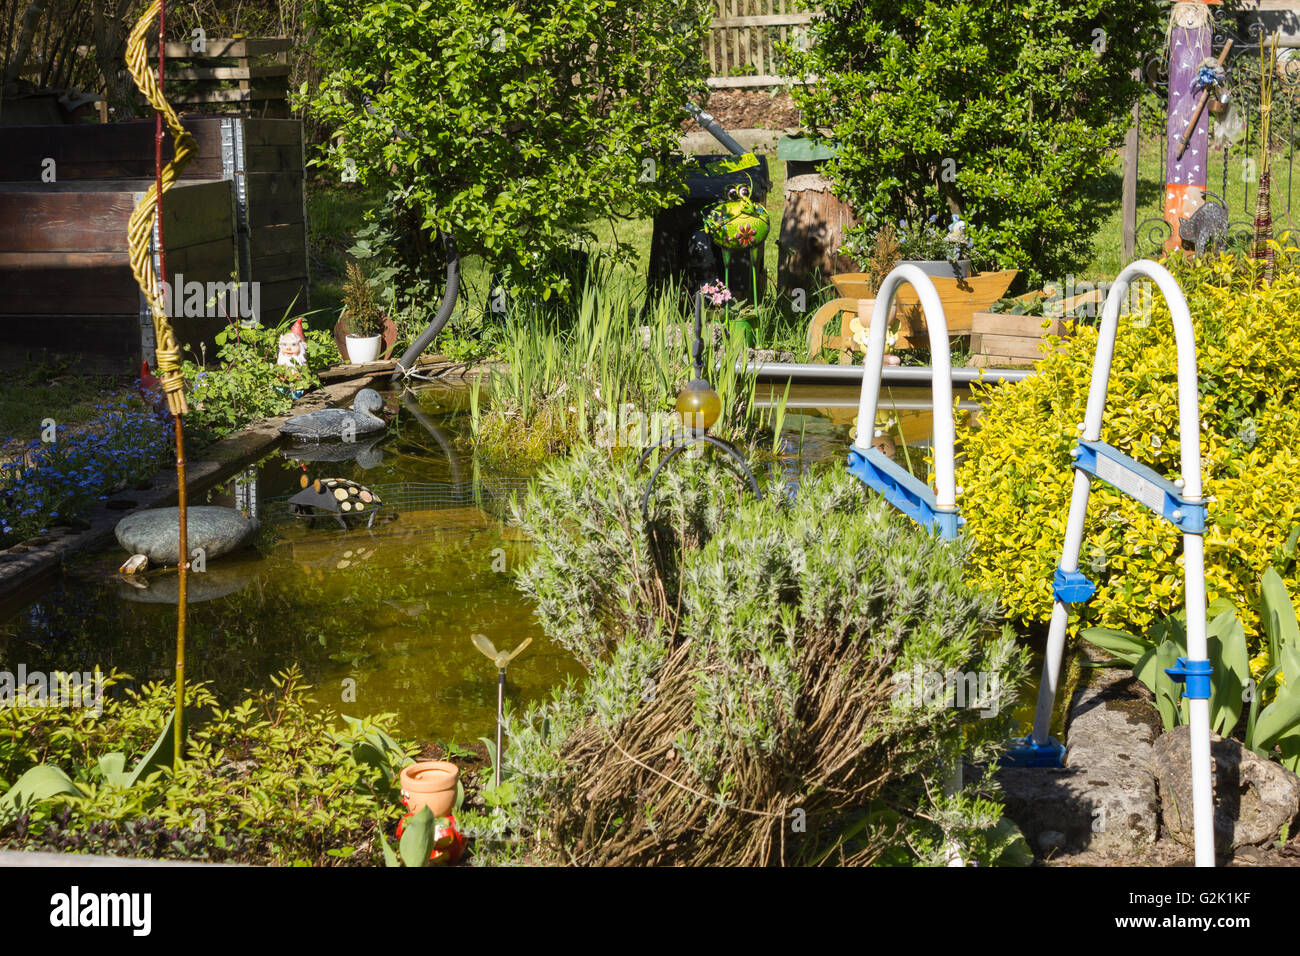 Gartenteich, Garden pond Stock Photo